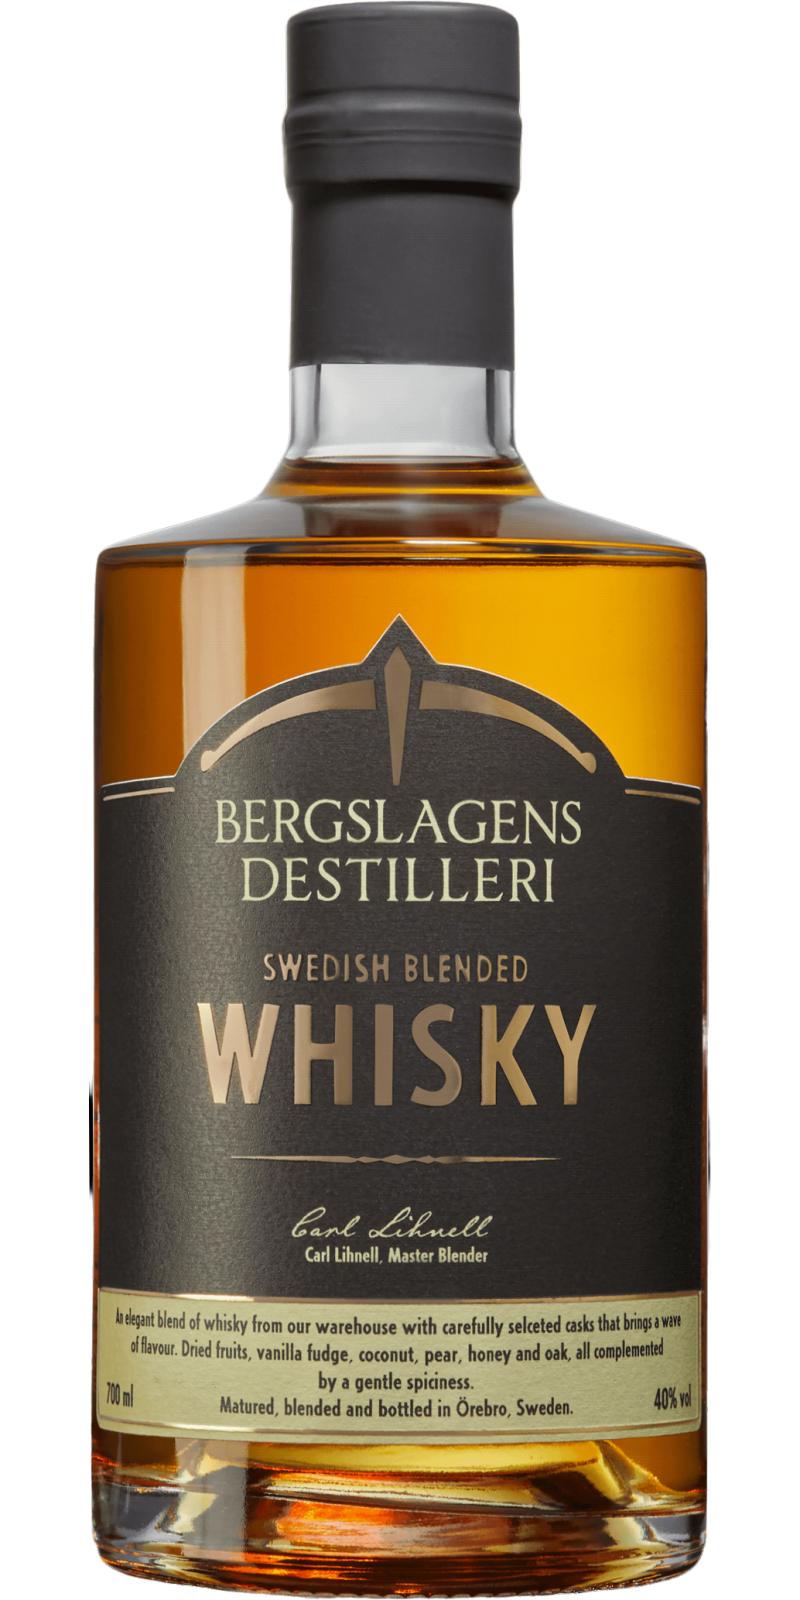 Bergslagens Swedish Blended Whisky